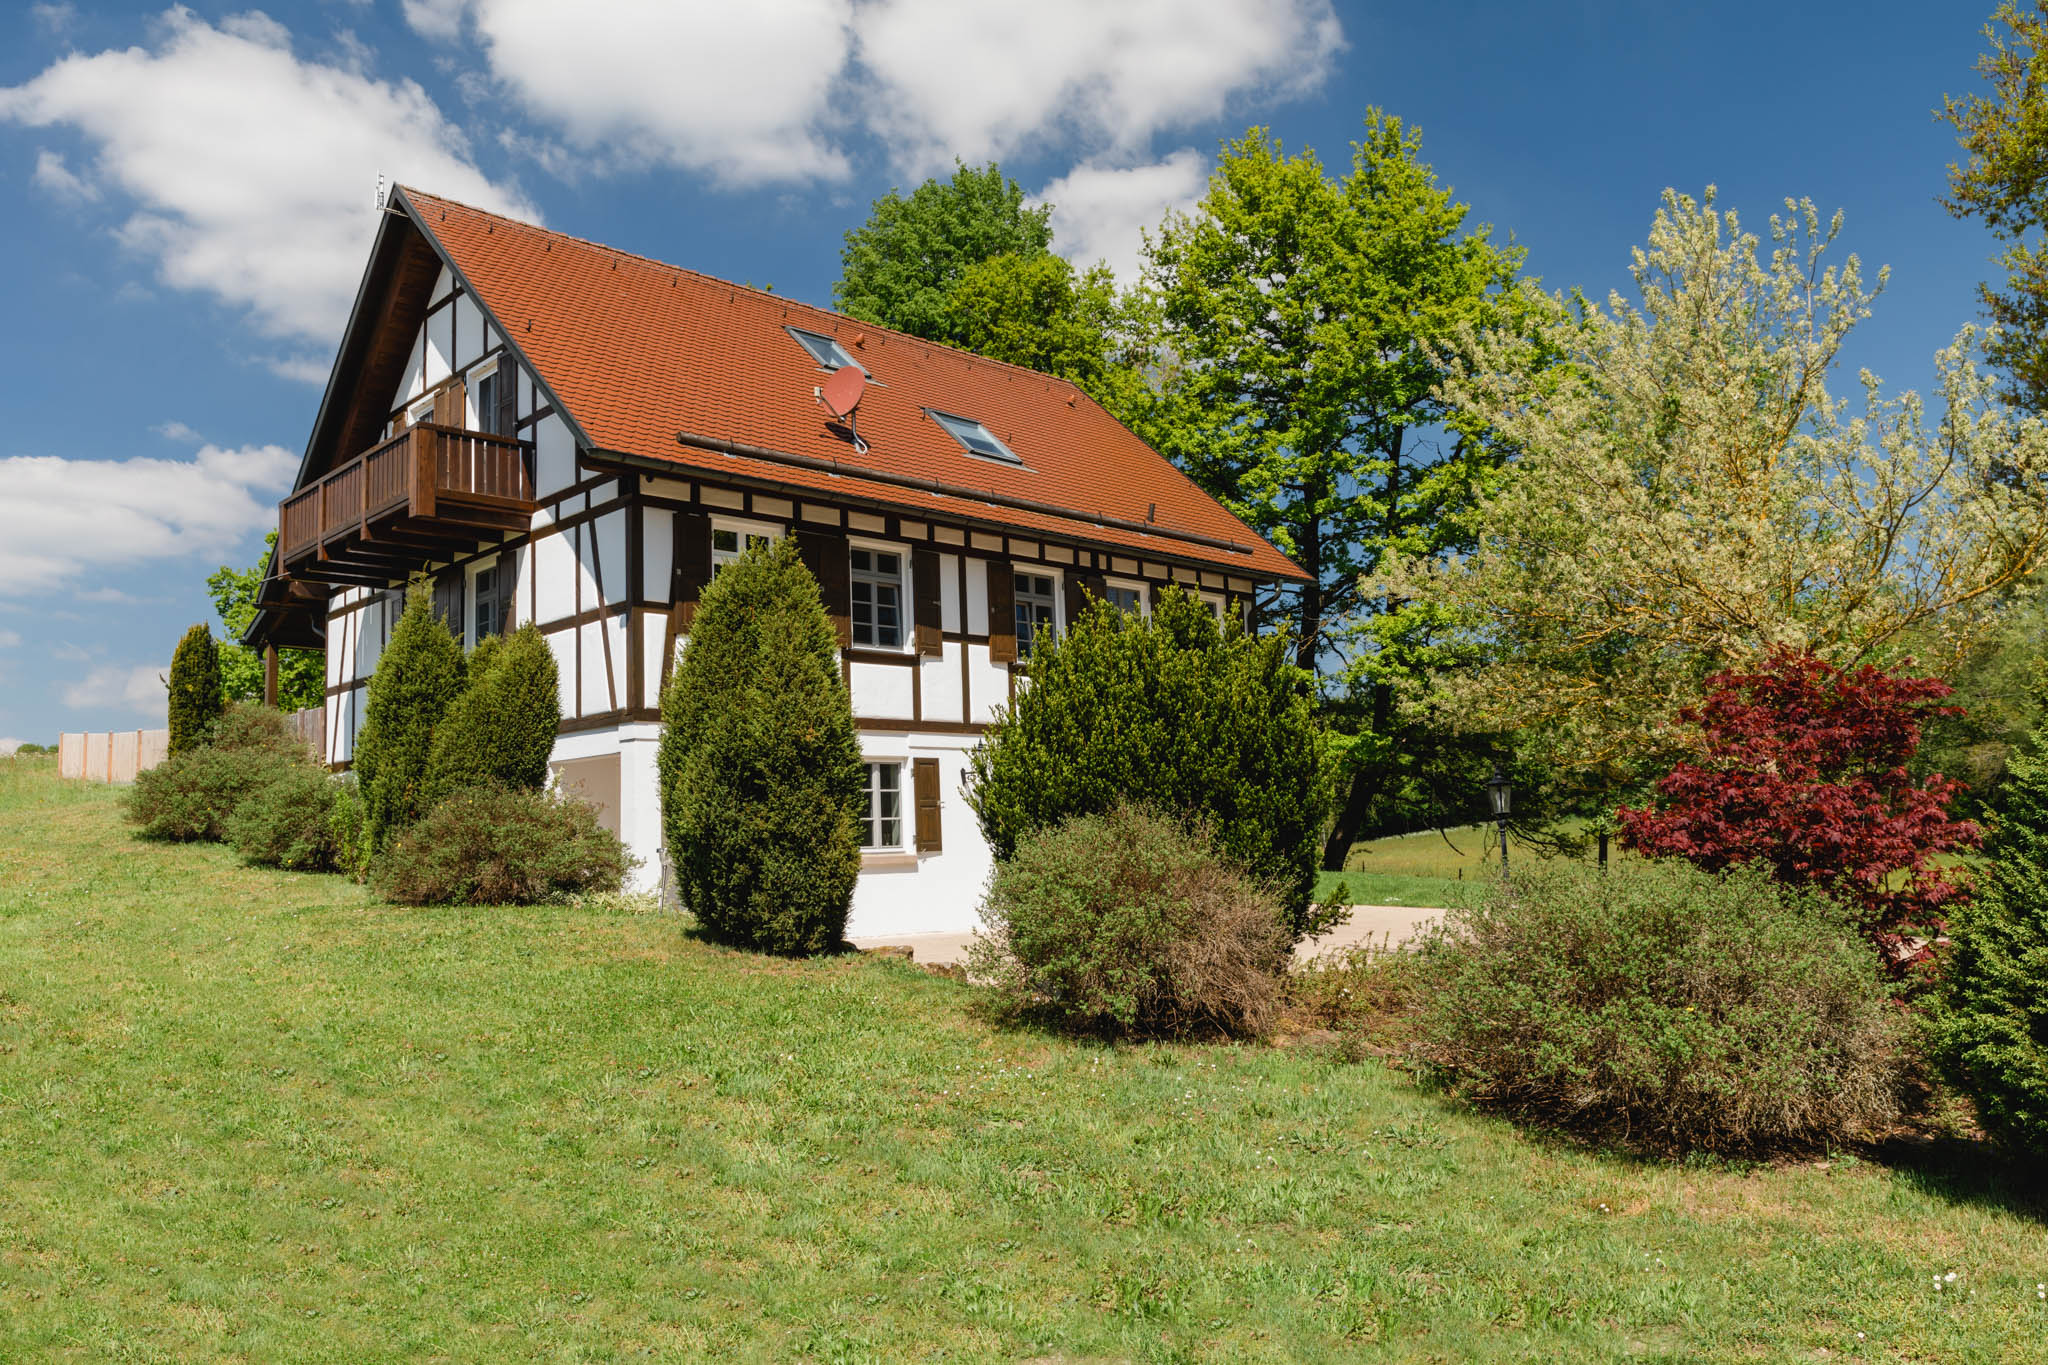 Exklusives Und Gemutliches Landhaus Kl Variante Houses For Rent In Gschwend Baden Wurttemberg Germany